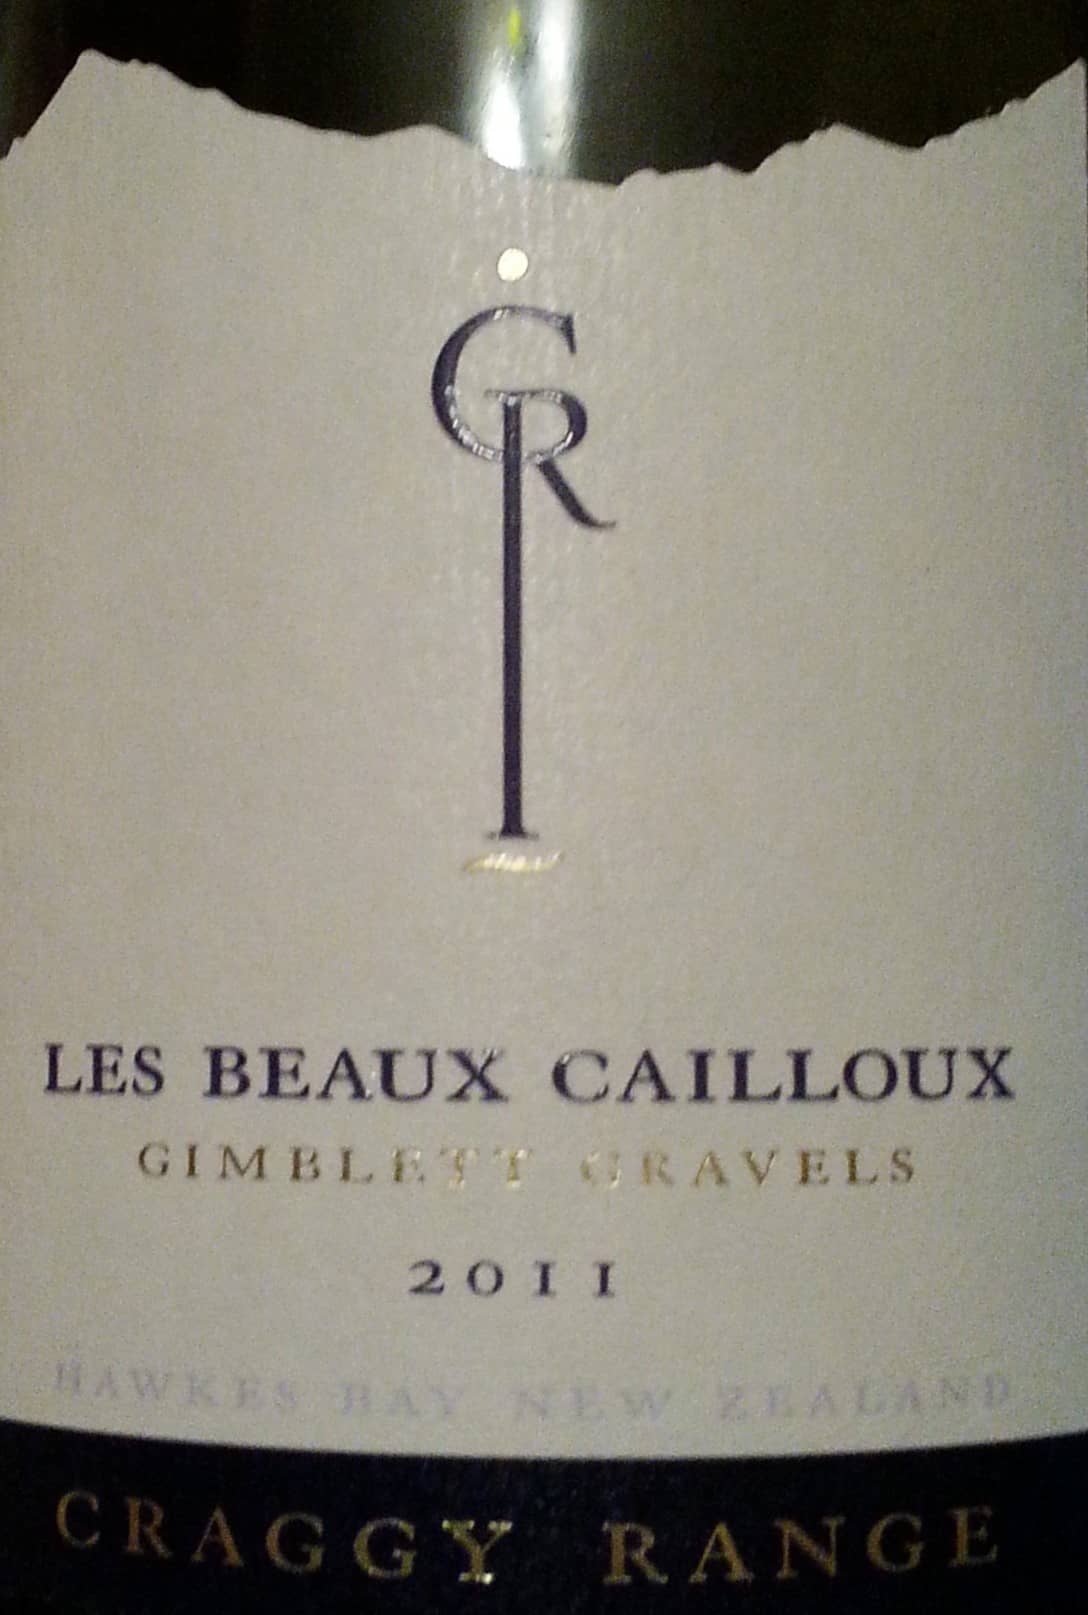 Craggy Range Les Beaux Cailloux 2011